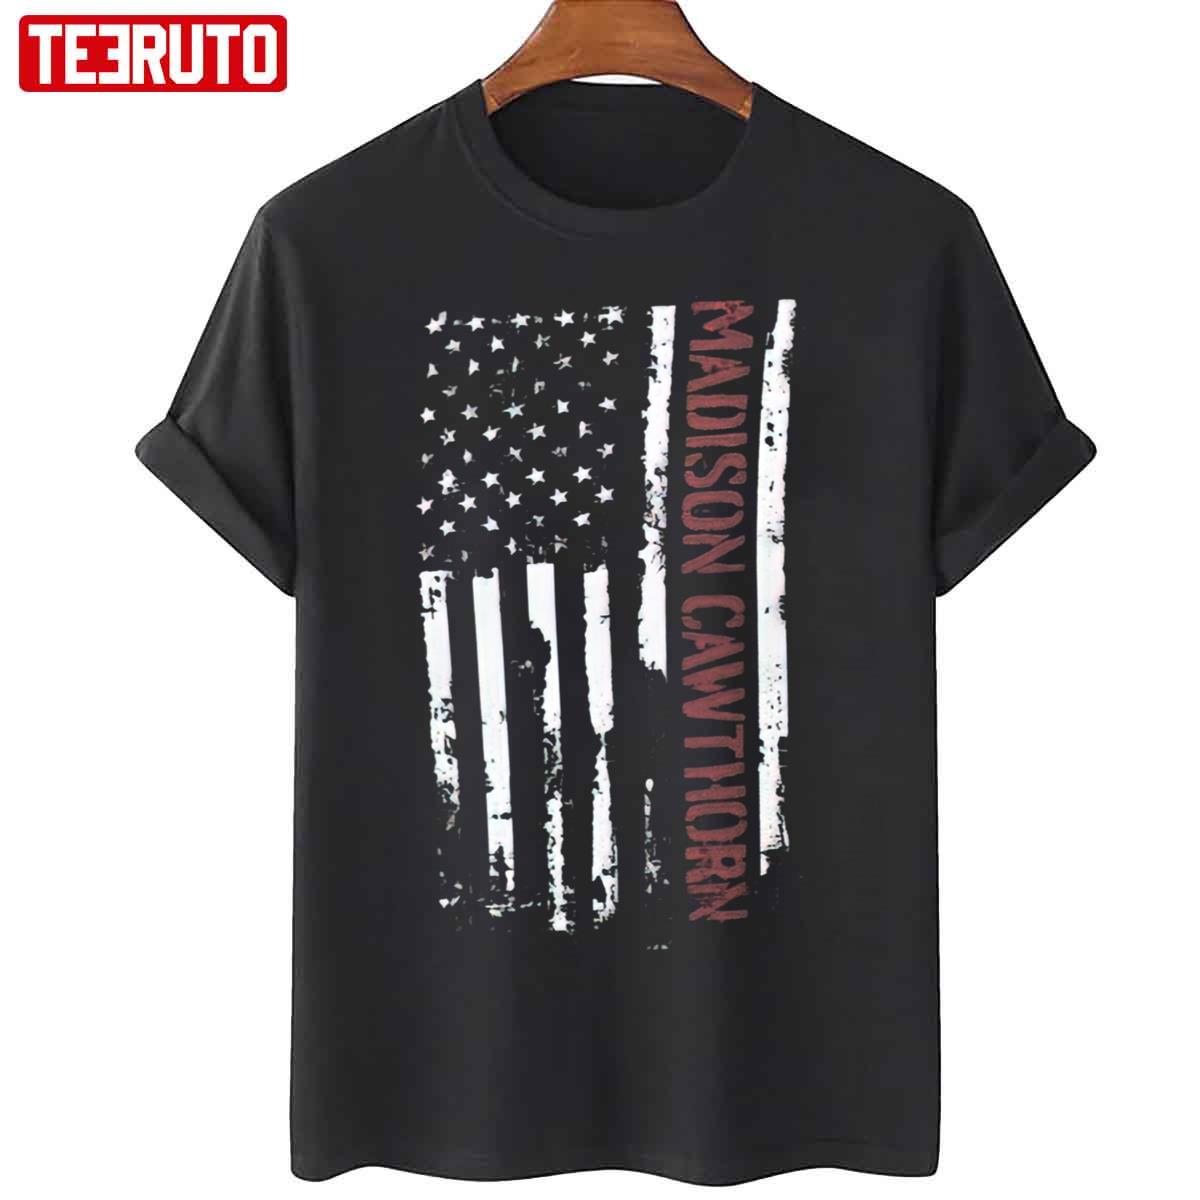 Old Glory Madison Cawthorn USA Vintage Flag Grunge Unisex T-Shirt